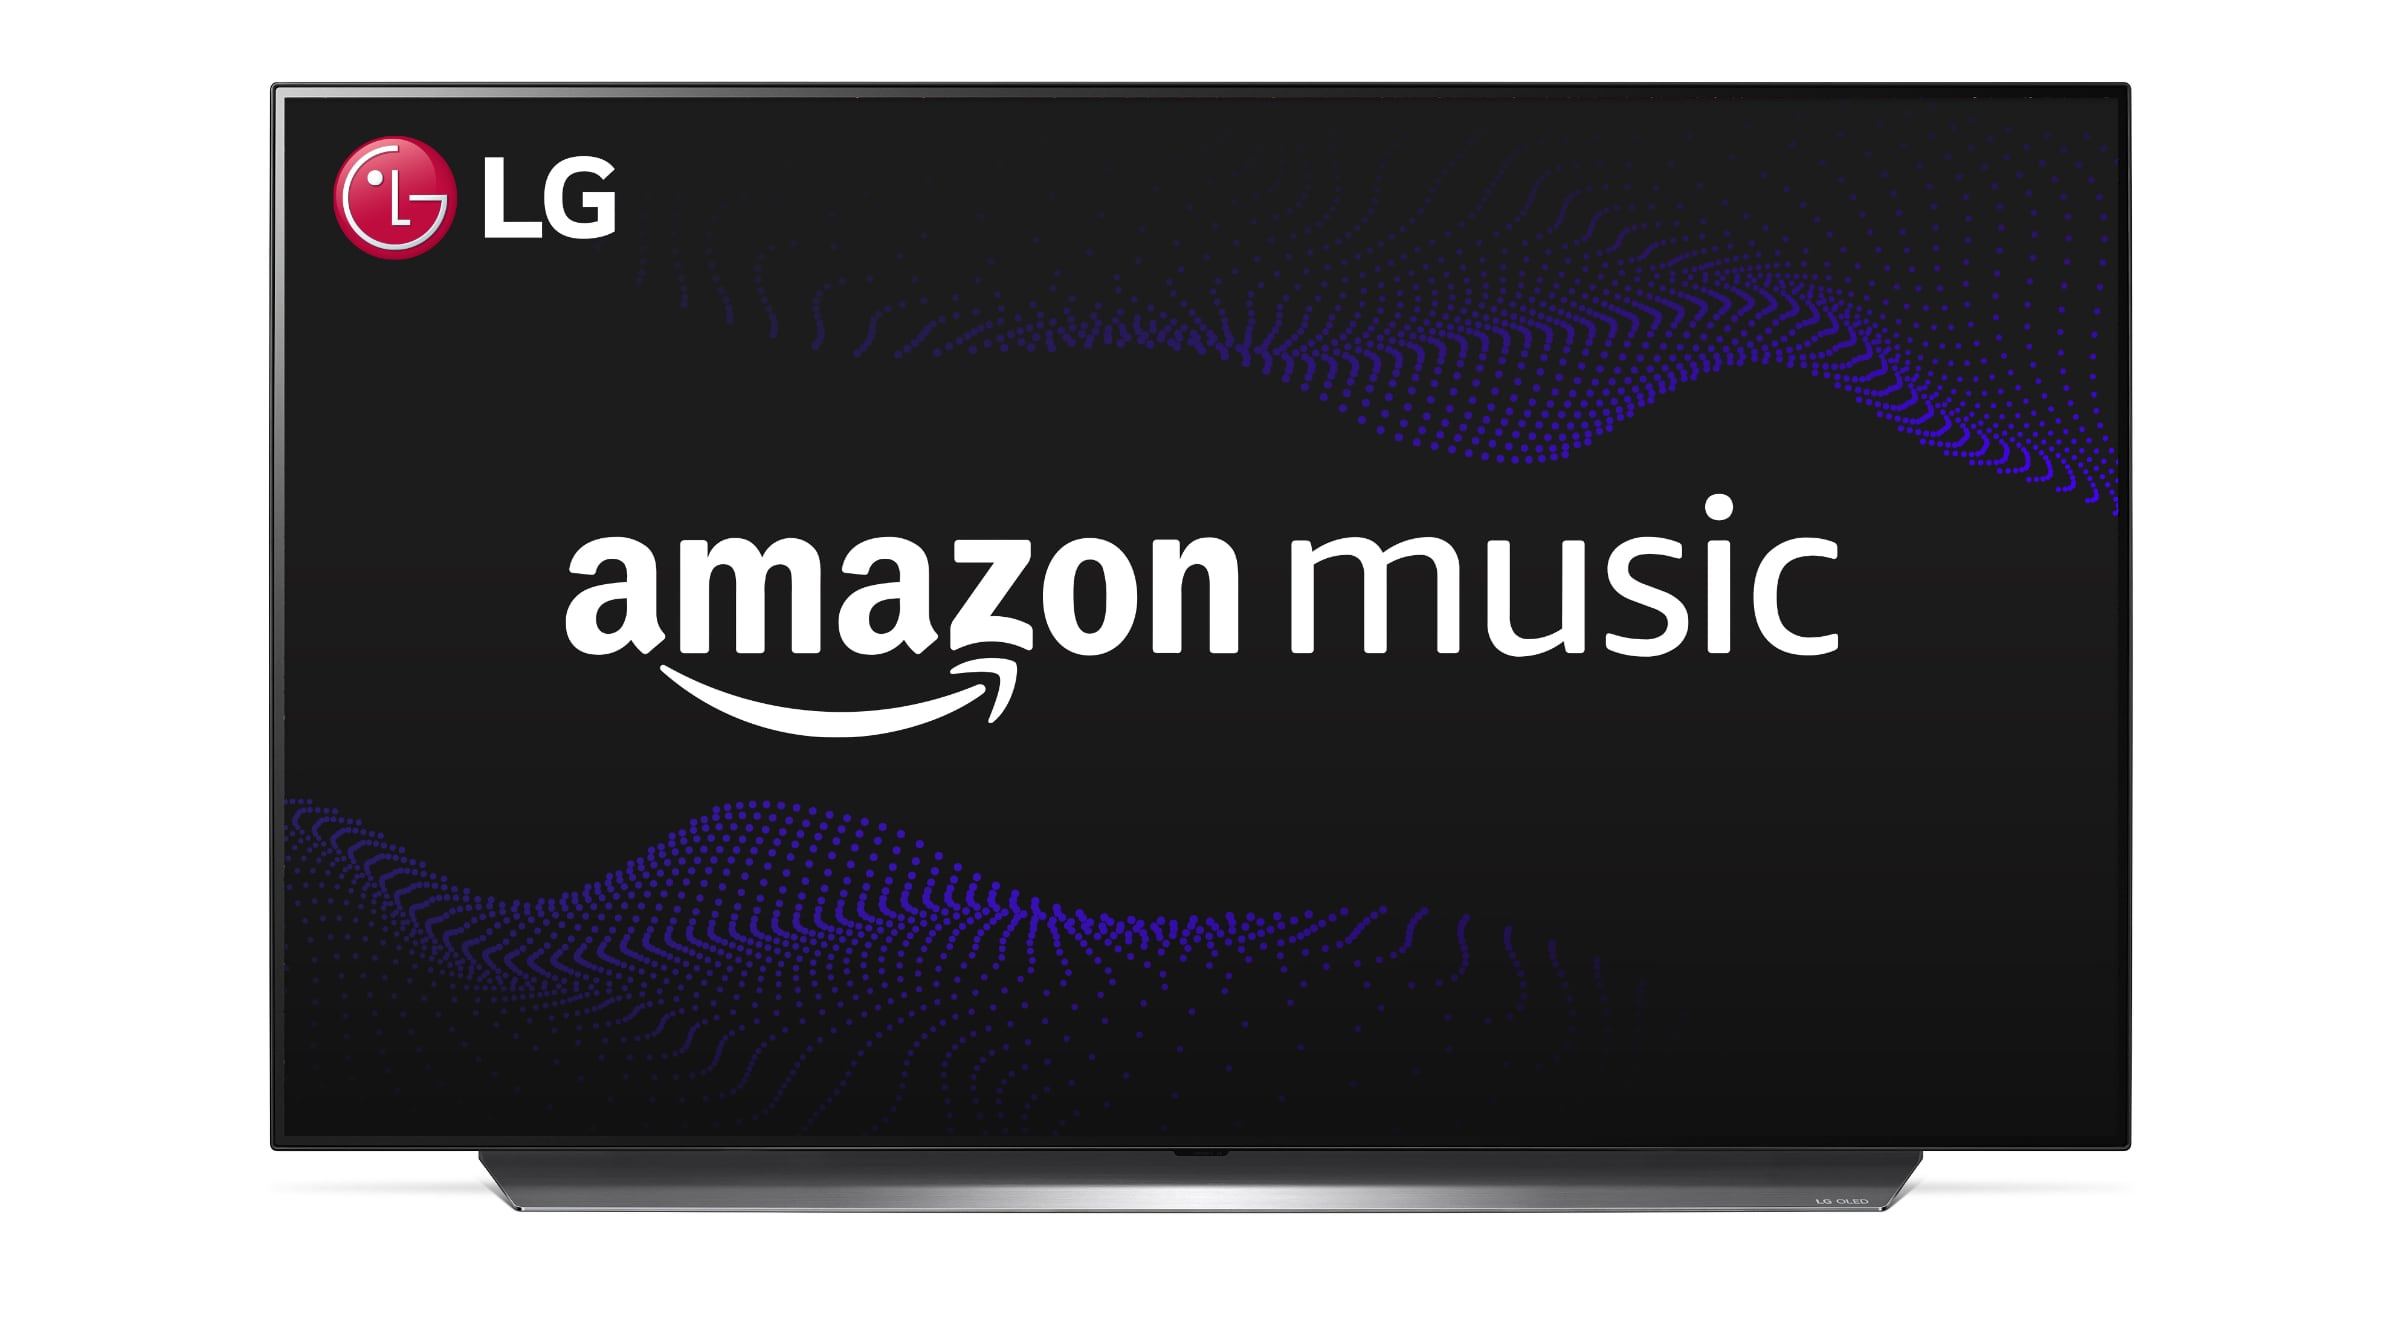 Amazon Music arrive sur certains téléviseurs LG (WebOs)